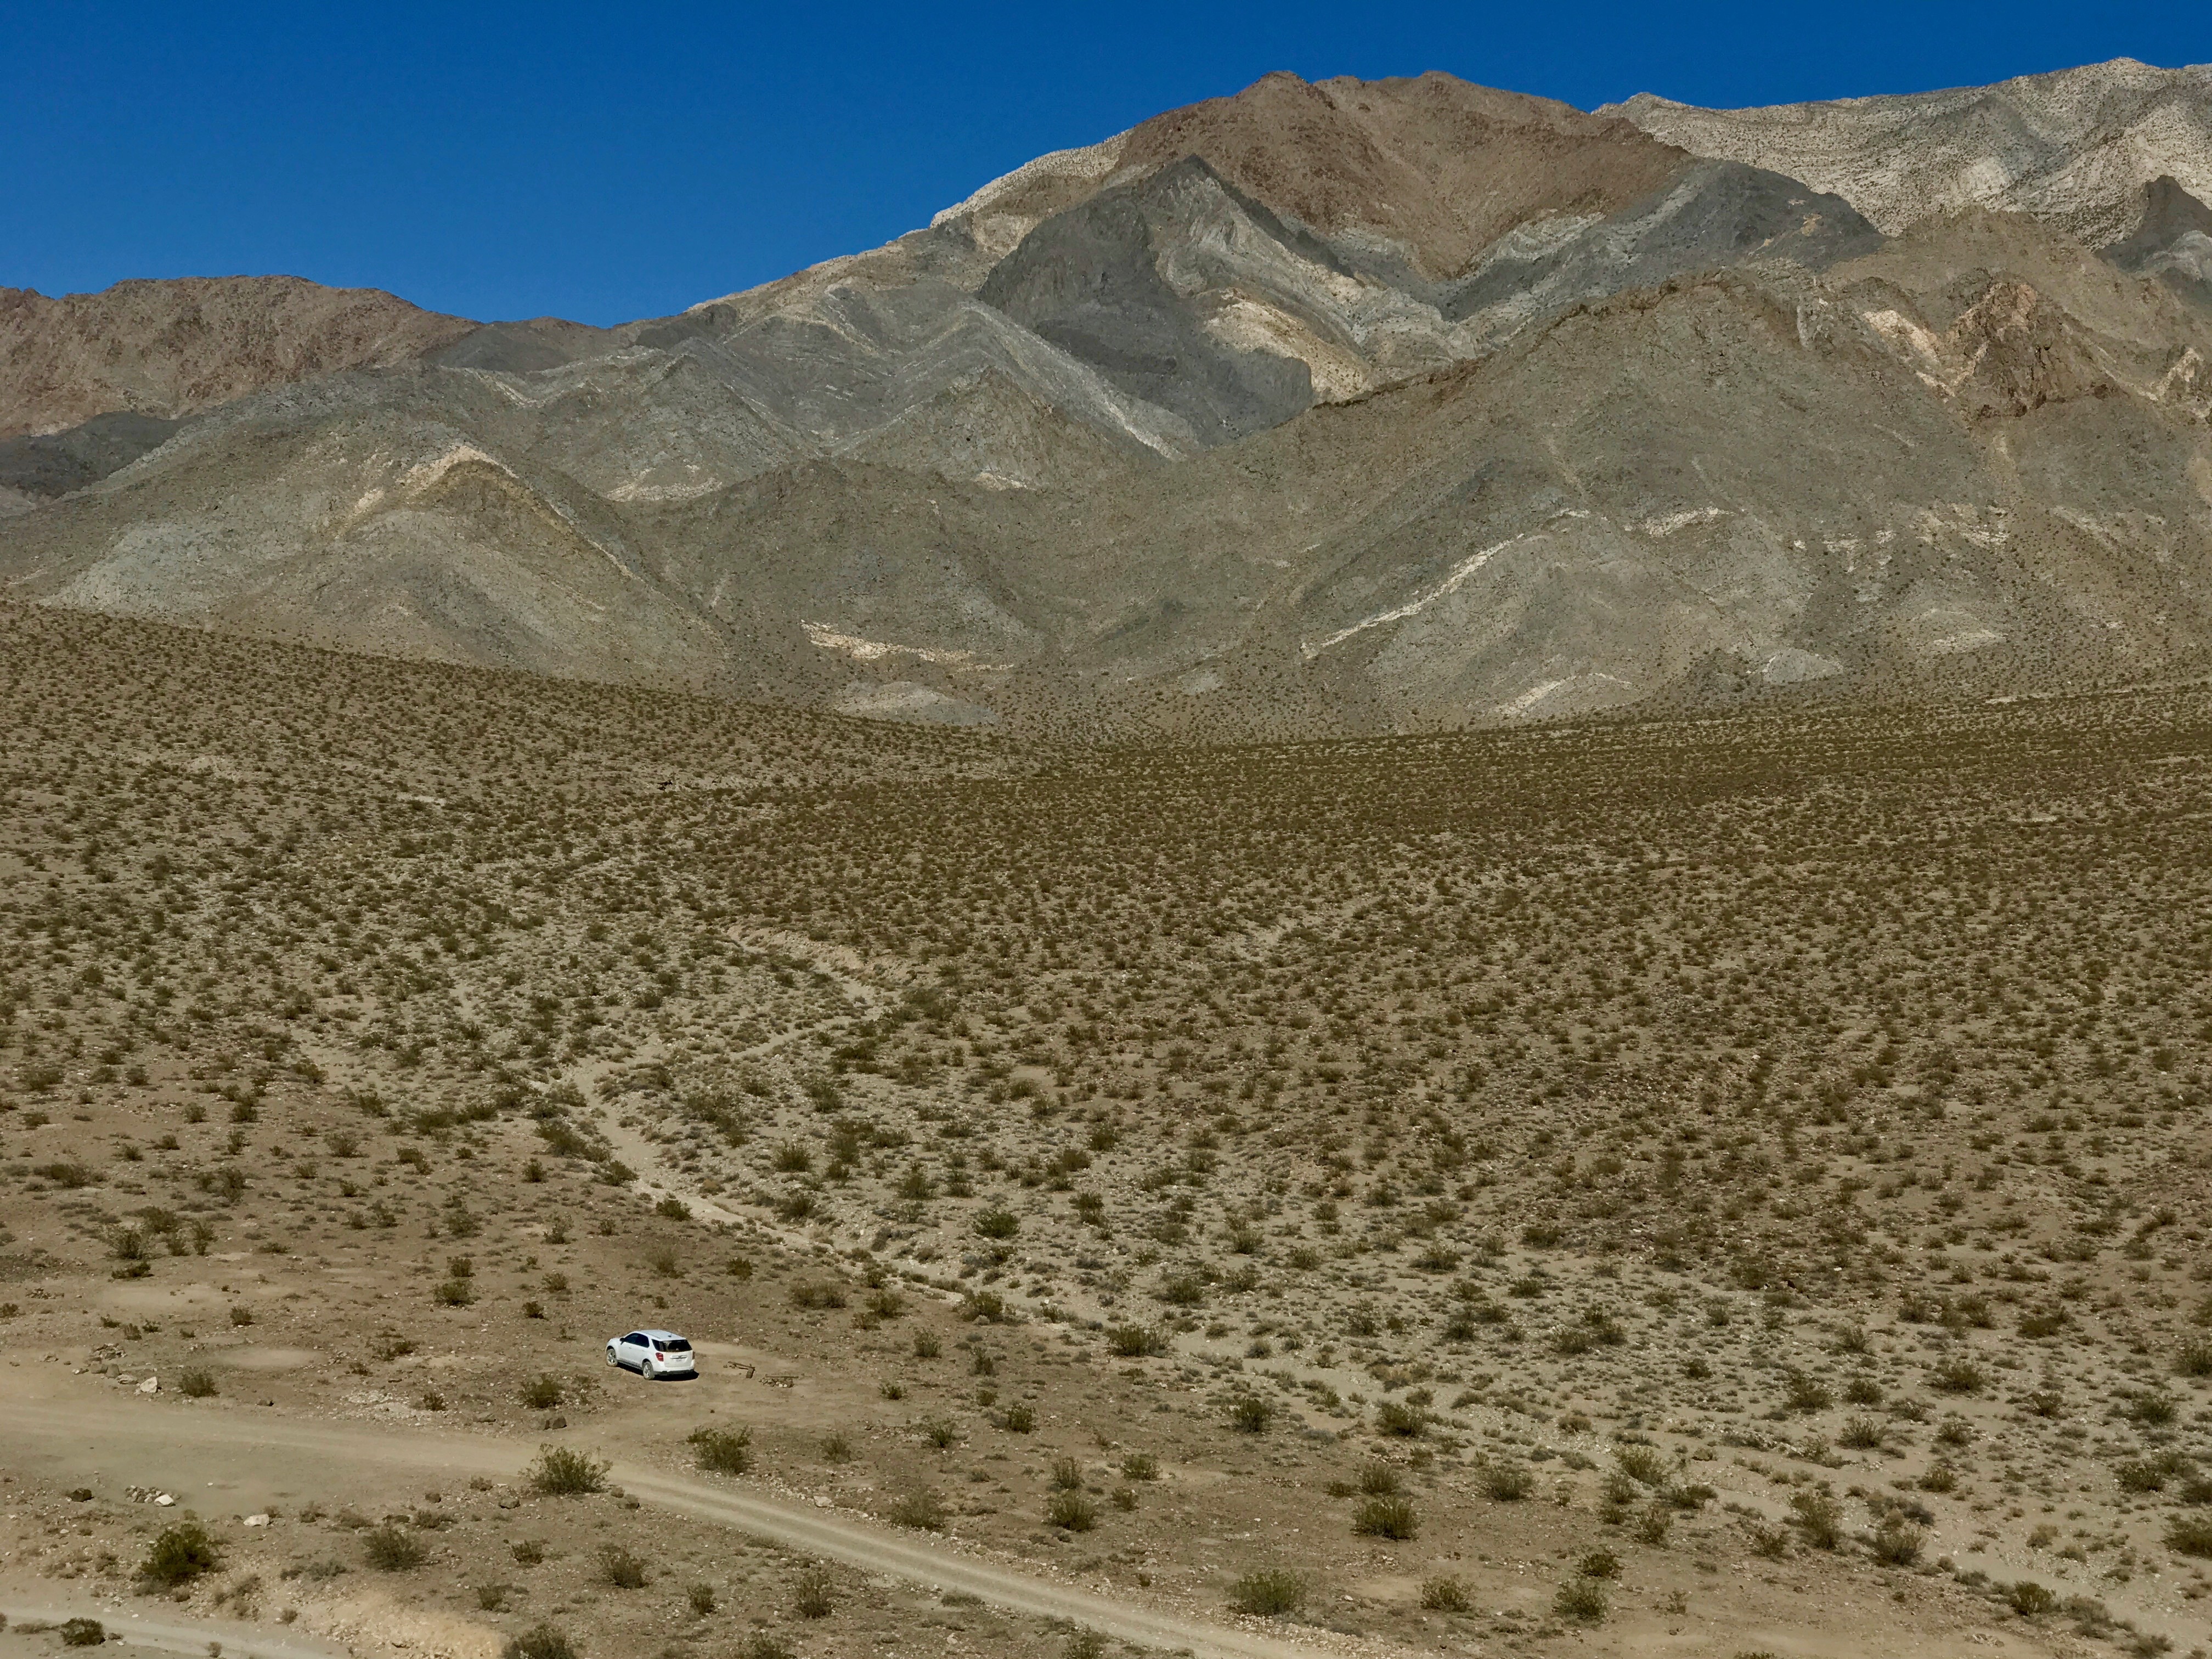 Racetrack Playa в Death Valley, CA